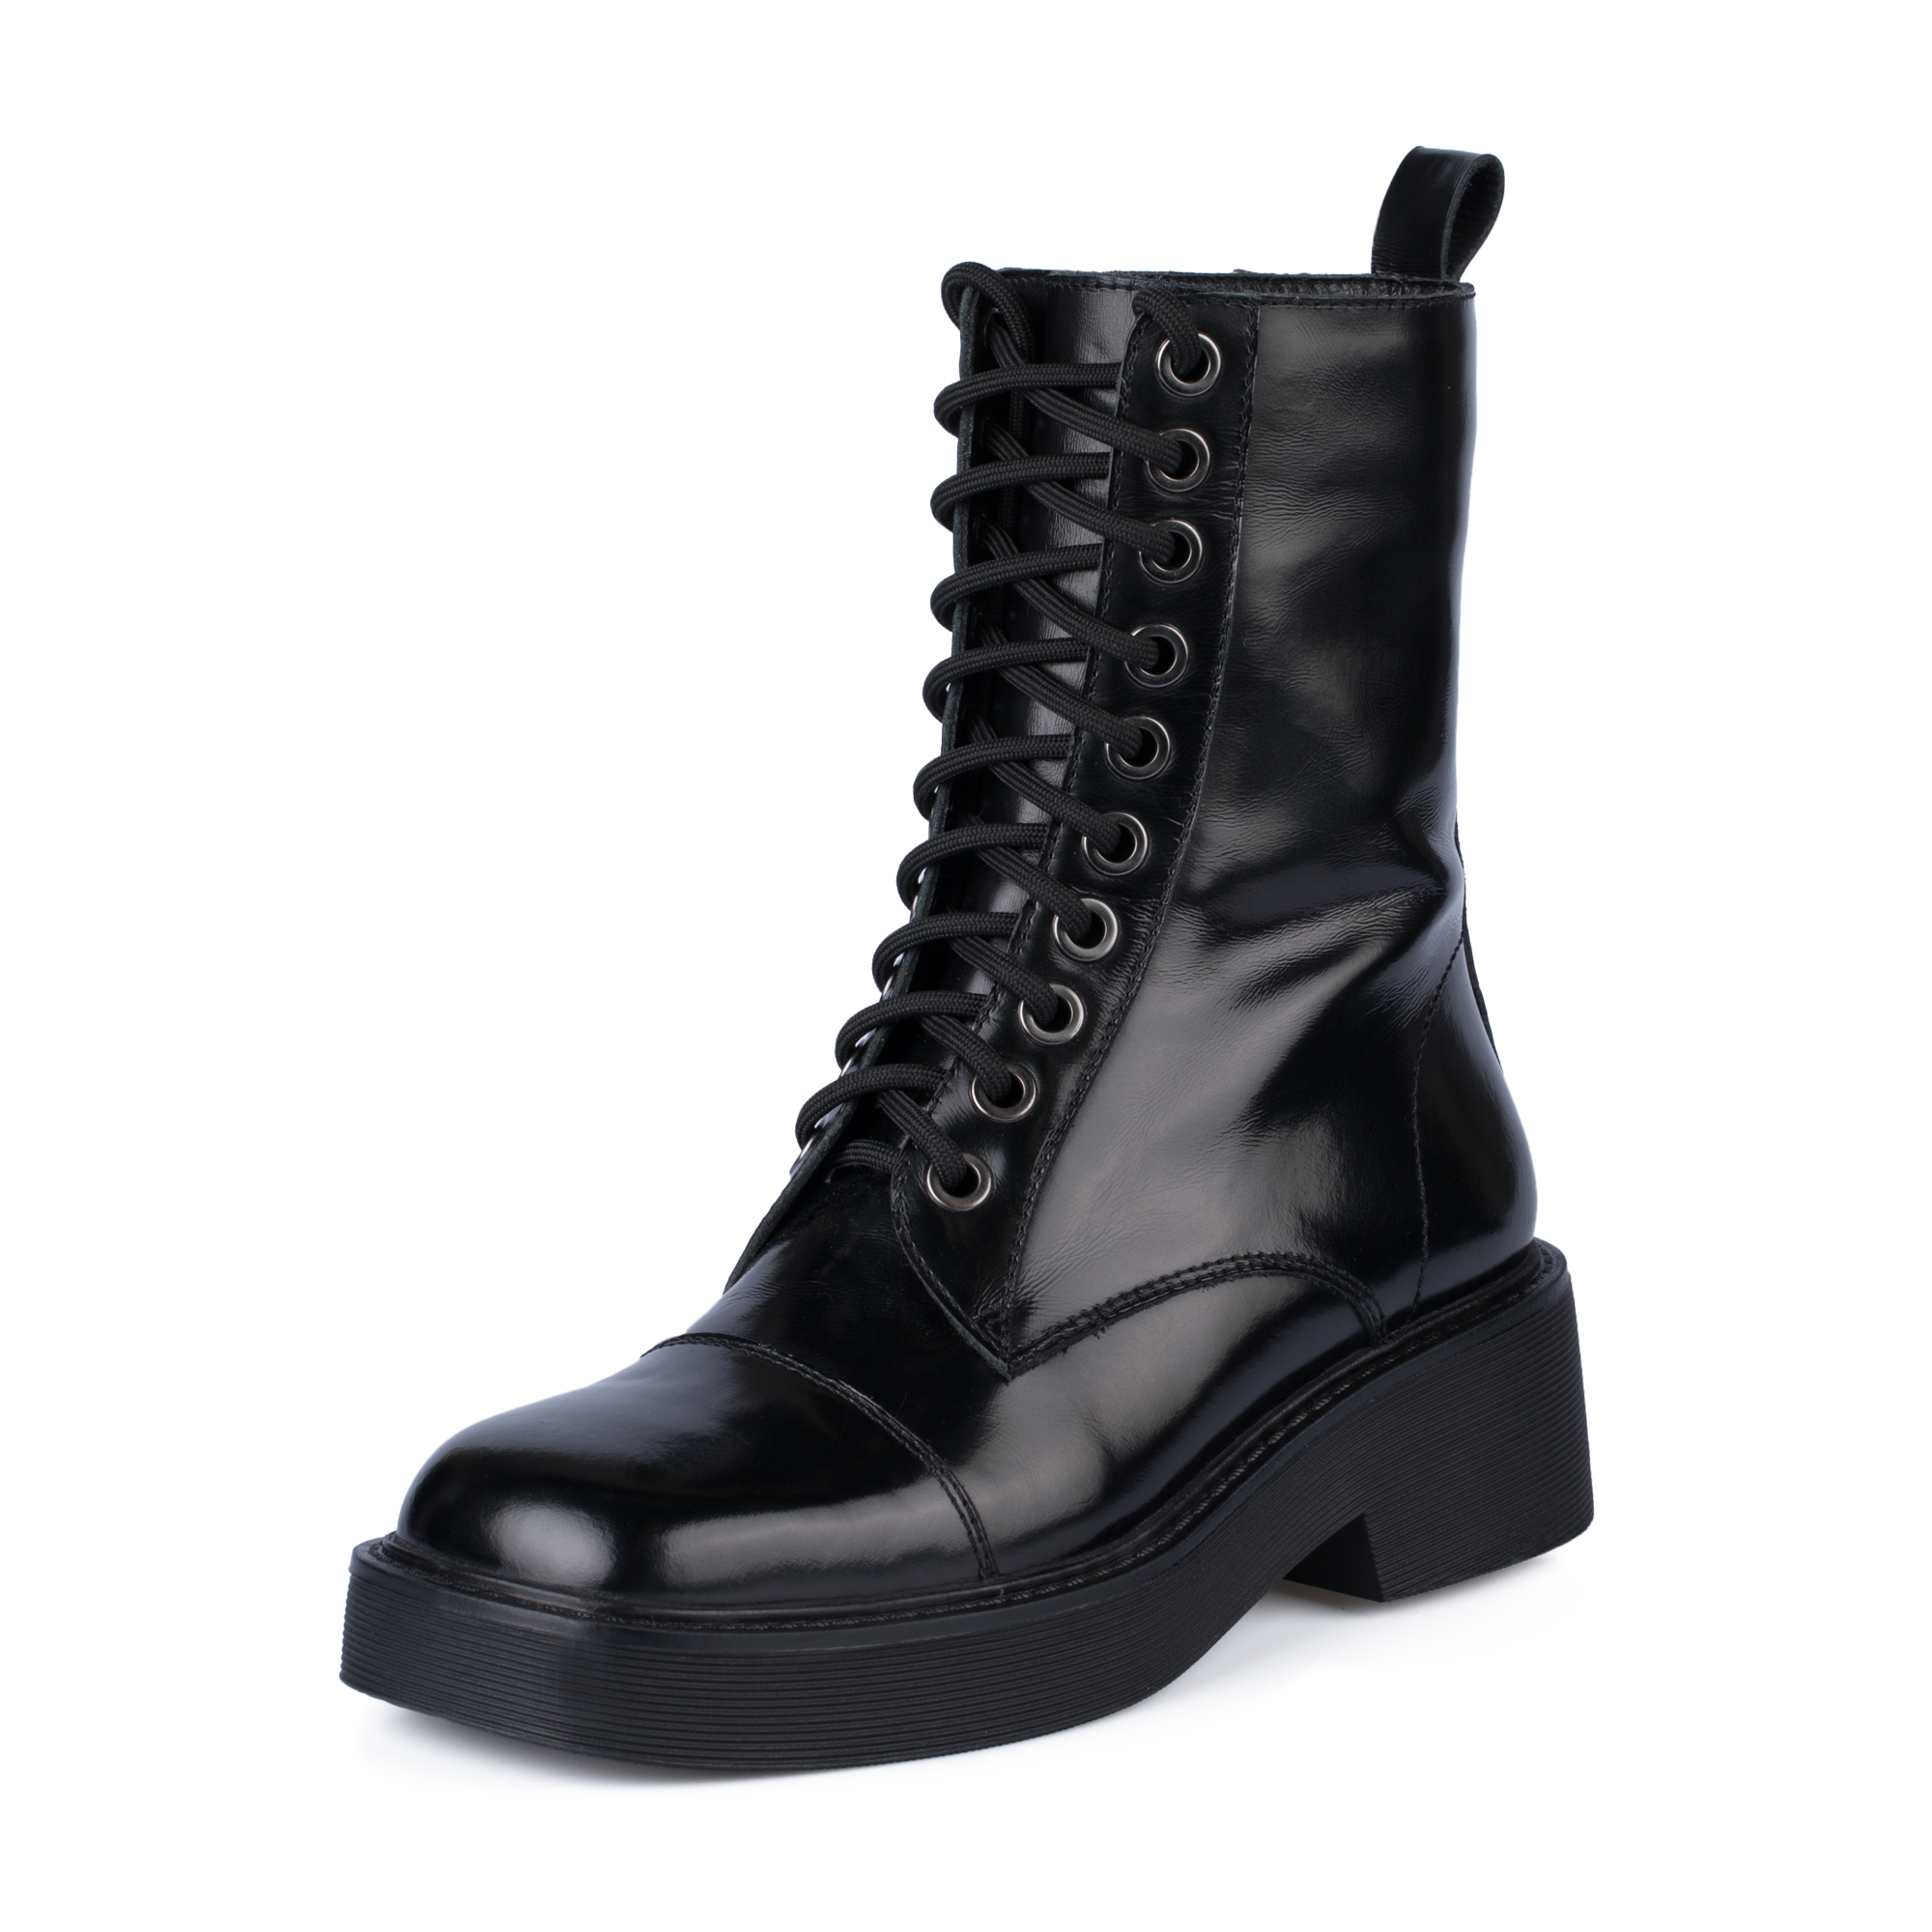 Ботинки Thomas Munz 126-400A-2102, цвет черный, размер 38 - фото 2